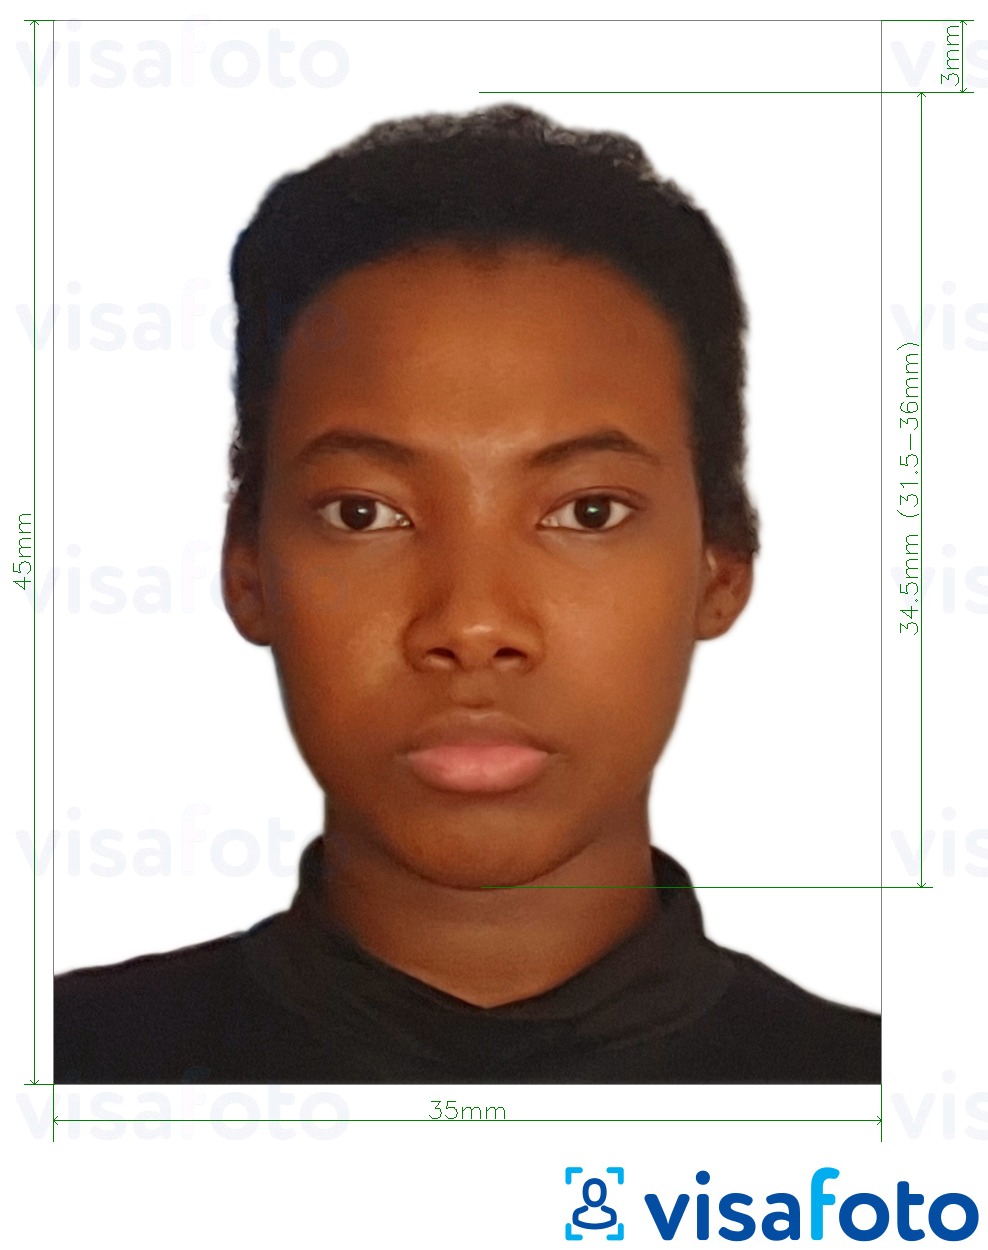 Ghana visa photo